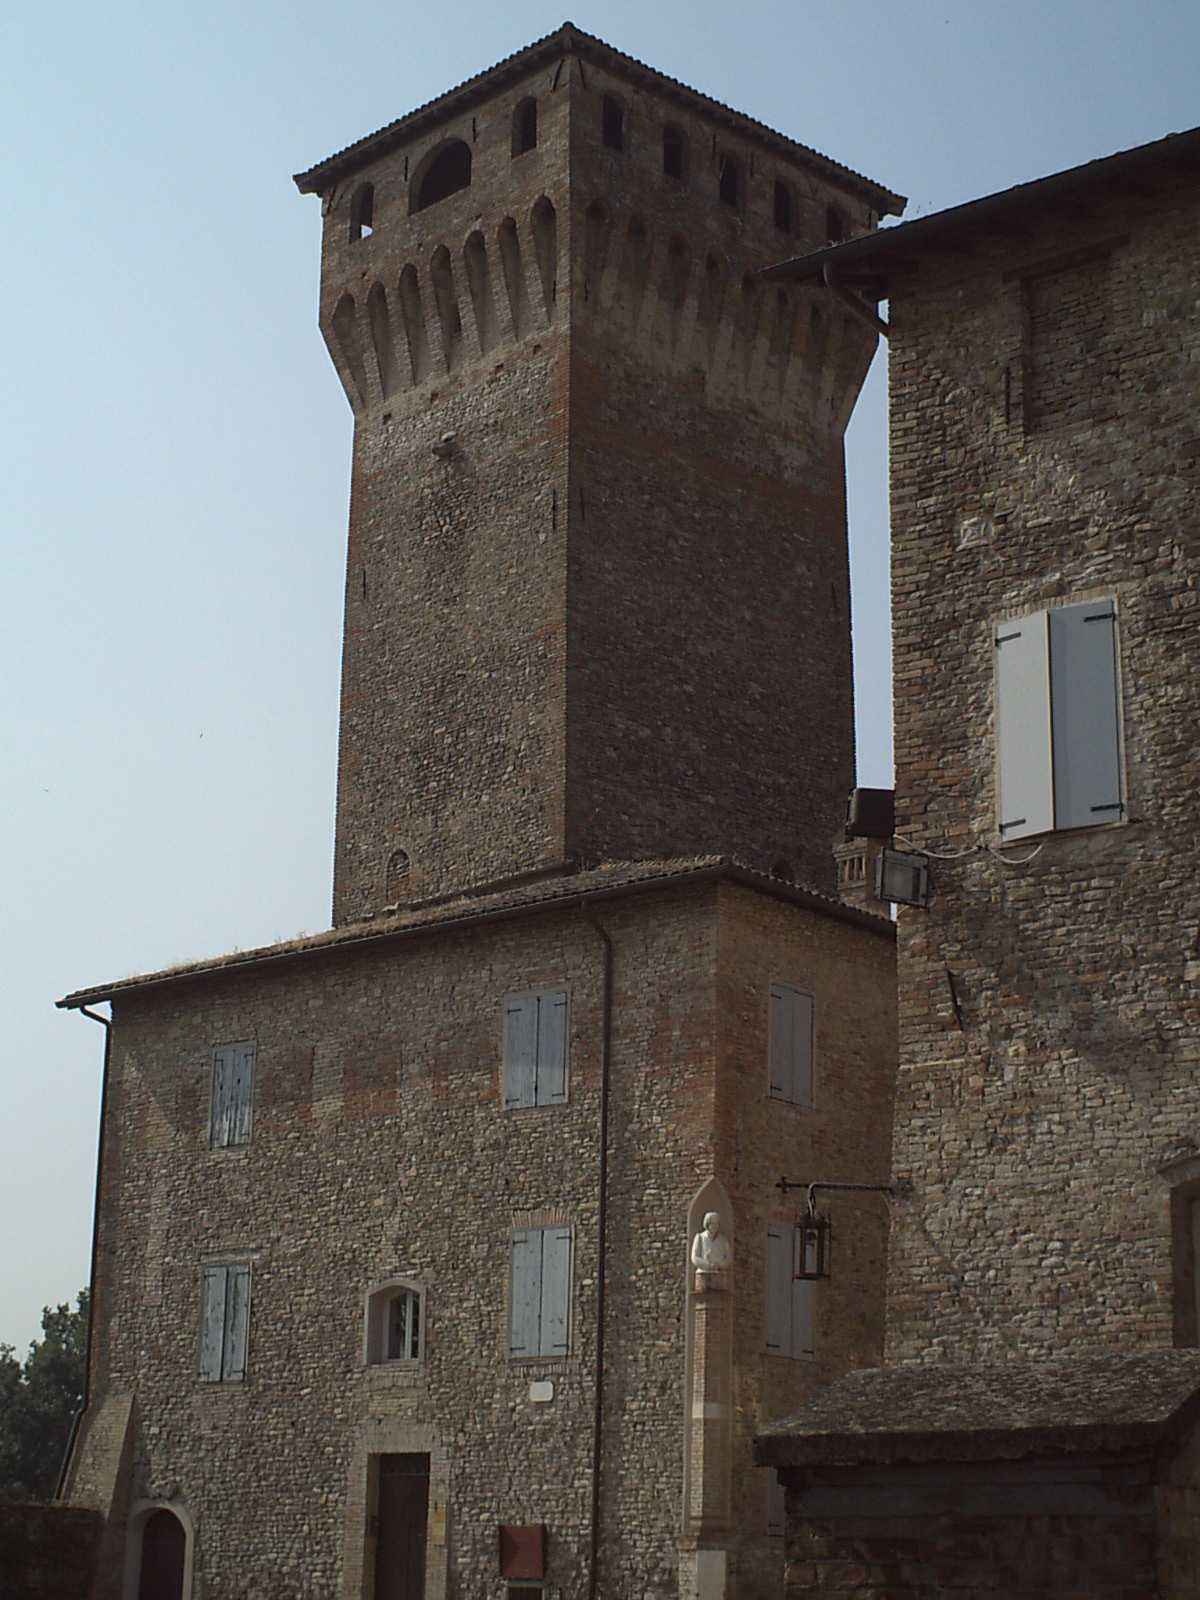 photo: https://upload.wikimedia.org/wikipedia/commons/7/7b/Rocca_e_torre_e_edificio_del_museo.JPG